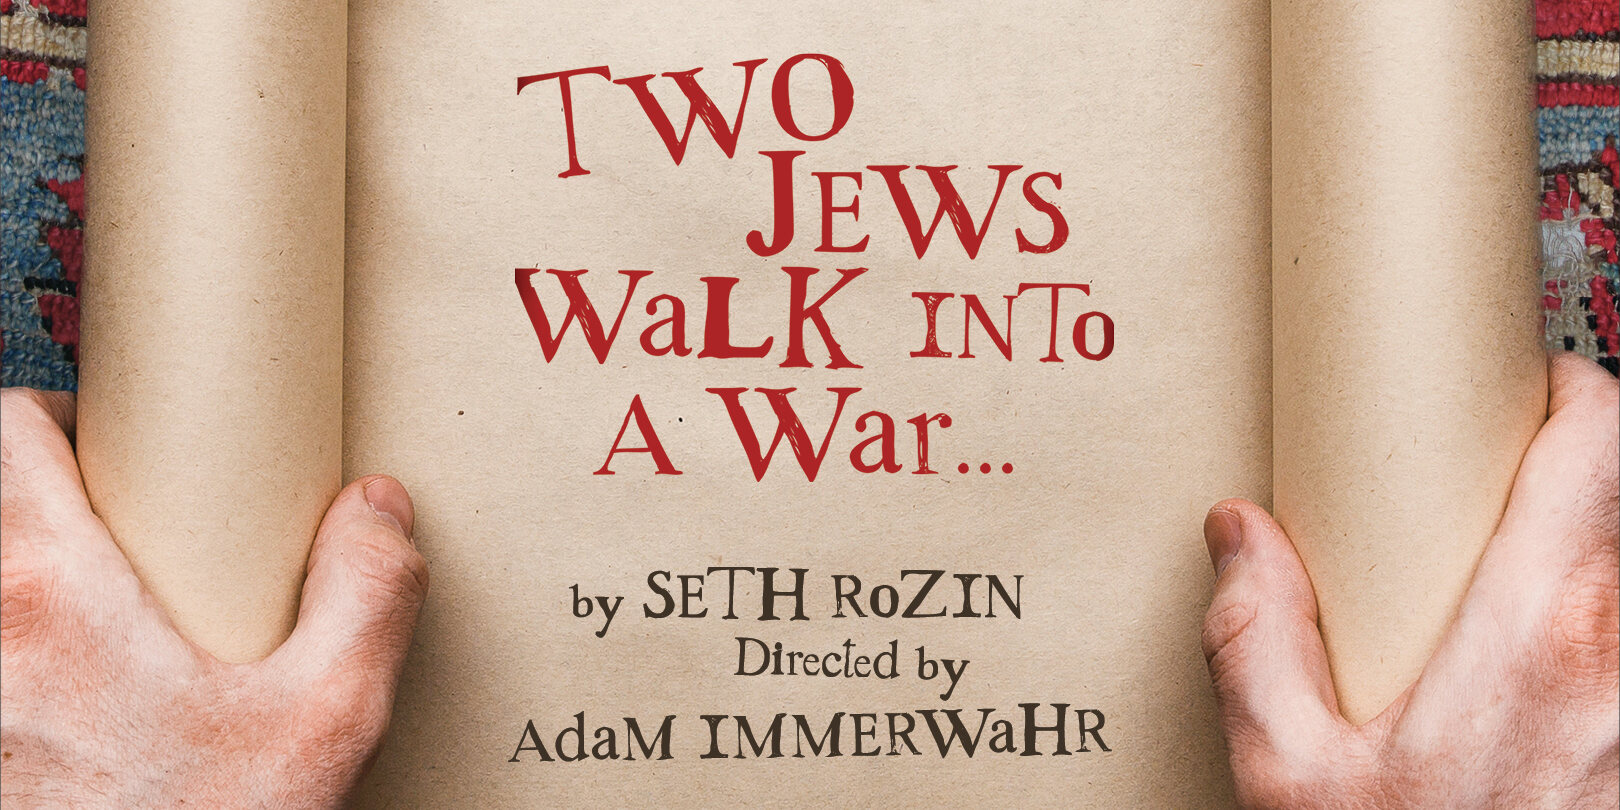 Two Jews Walk Into A War...